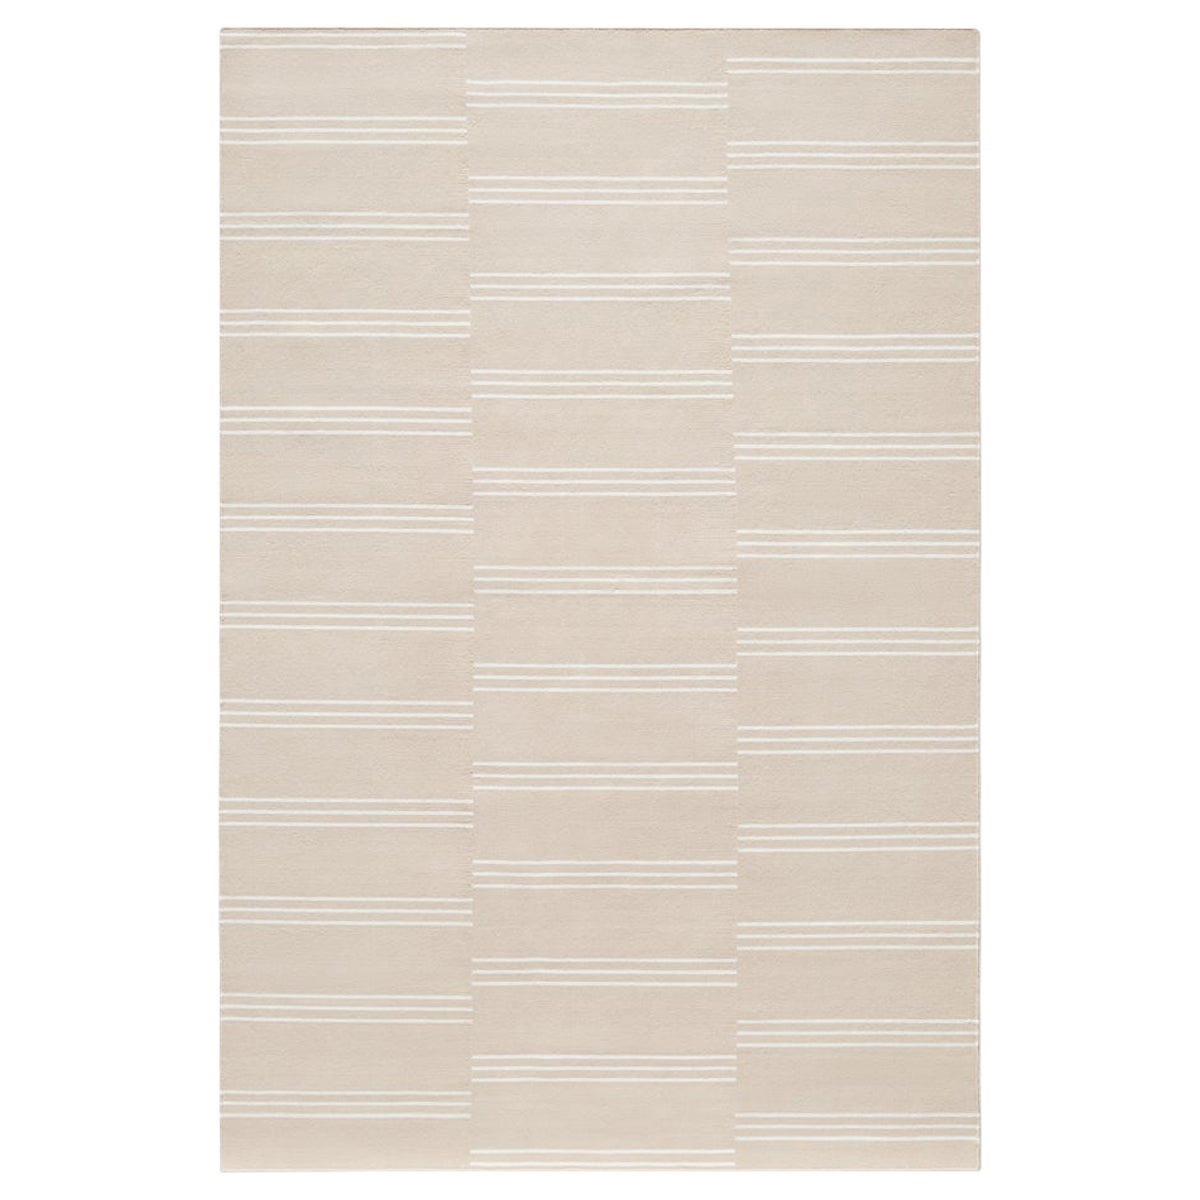 Moderner Dhurrie/Kelim-Teppich mit gestreiften Streifen in Sand/Creme in skandinavischem Design